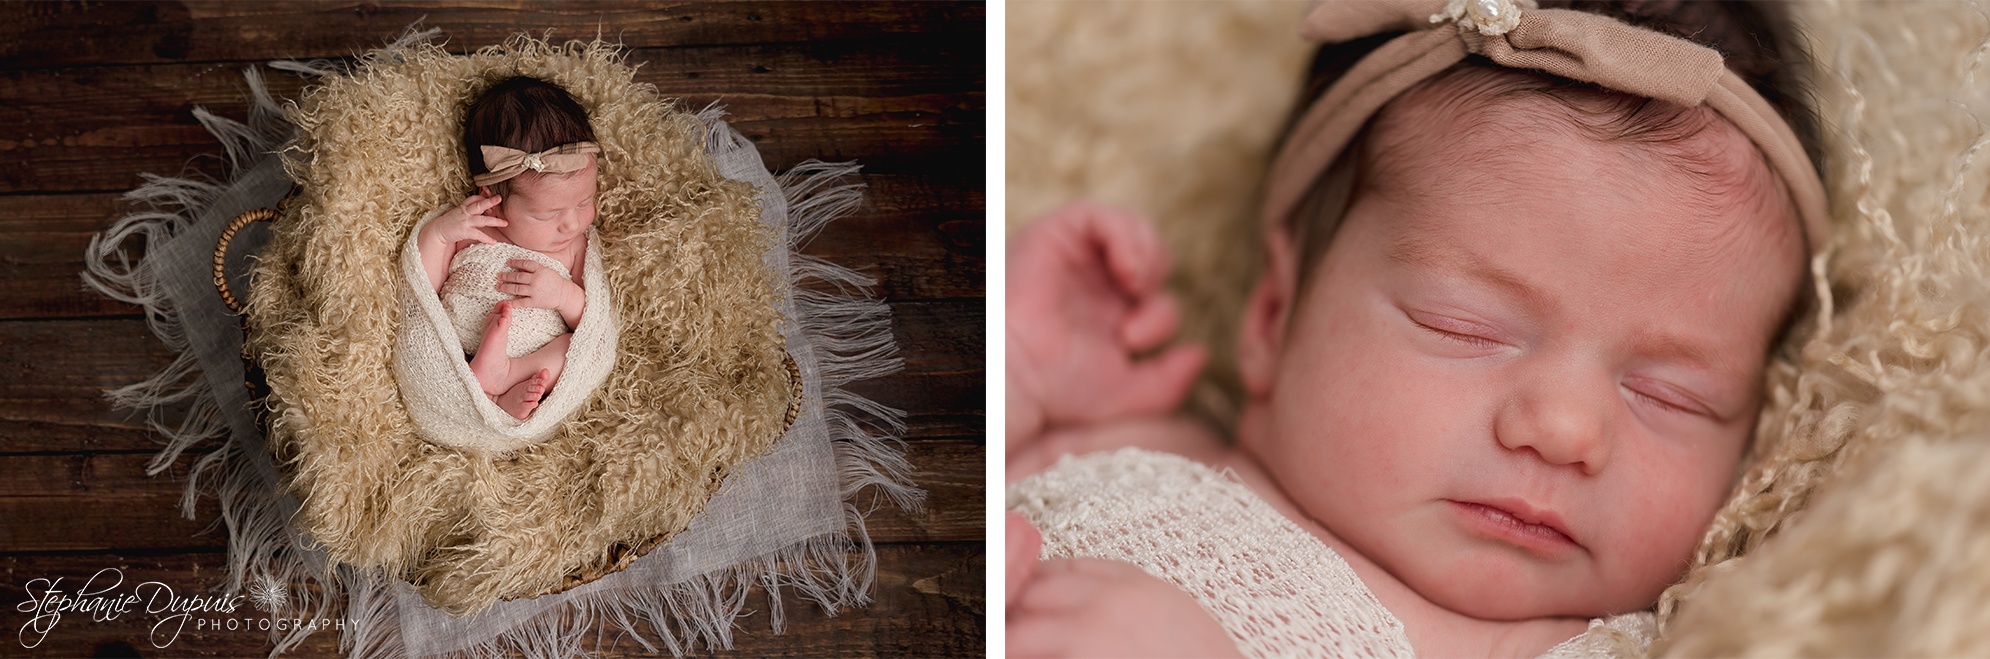 Kaitlin Belanger 10 - Portfolio: Scarlett - Infant Session